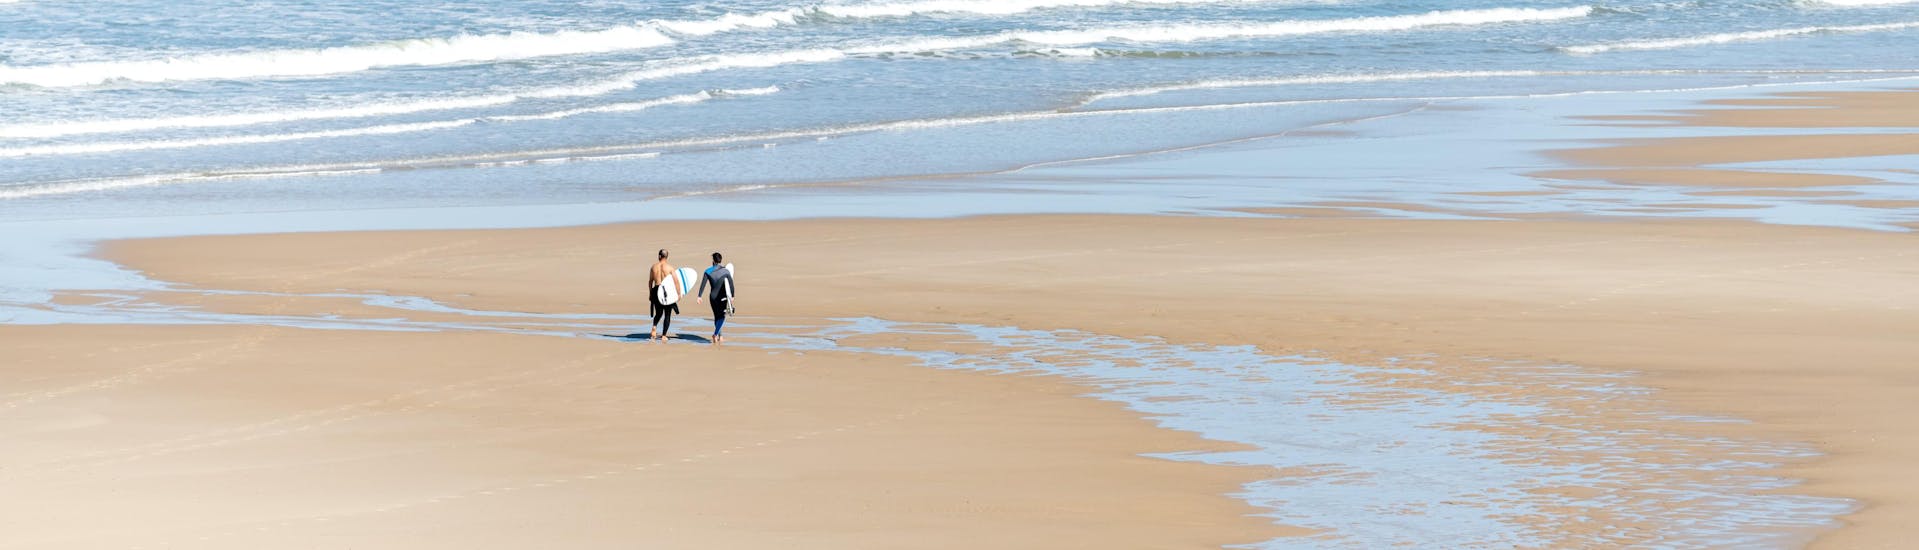 Deux hommes marchent sur la plage de Capbreton avec leur planche de surf sous le bras, où se déroulent de nombreux cours de surf.